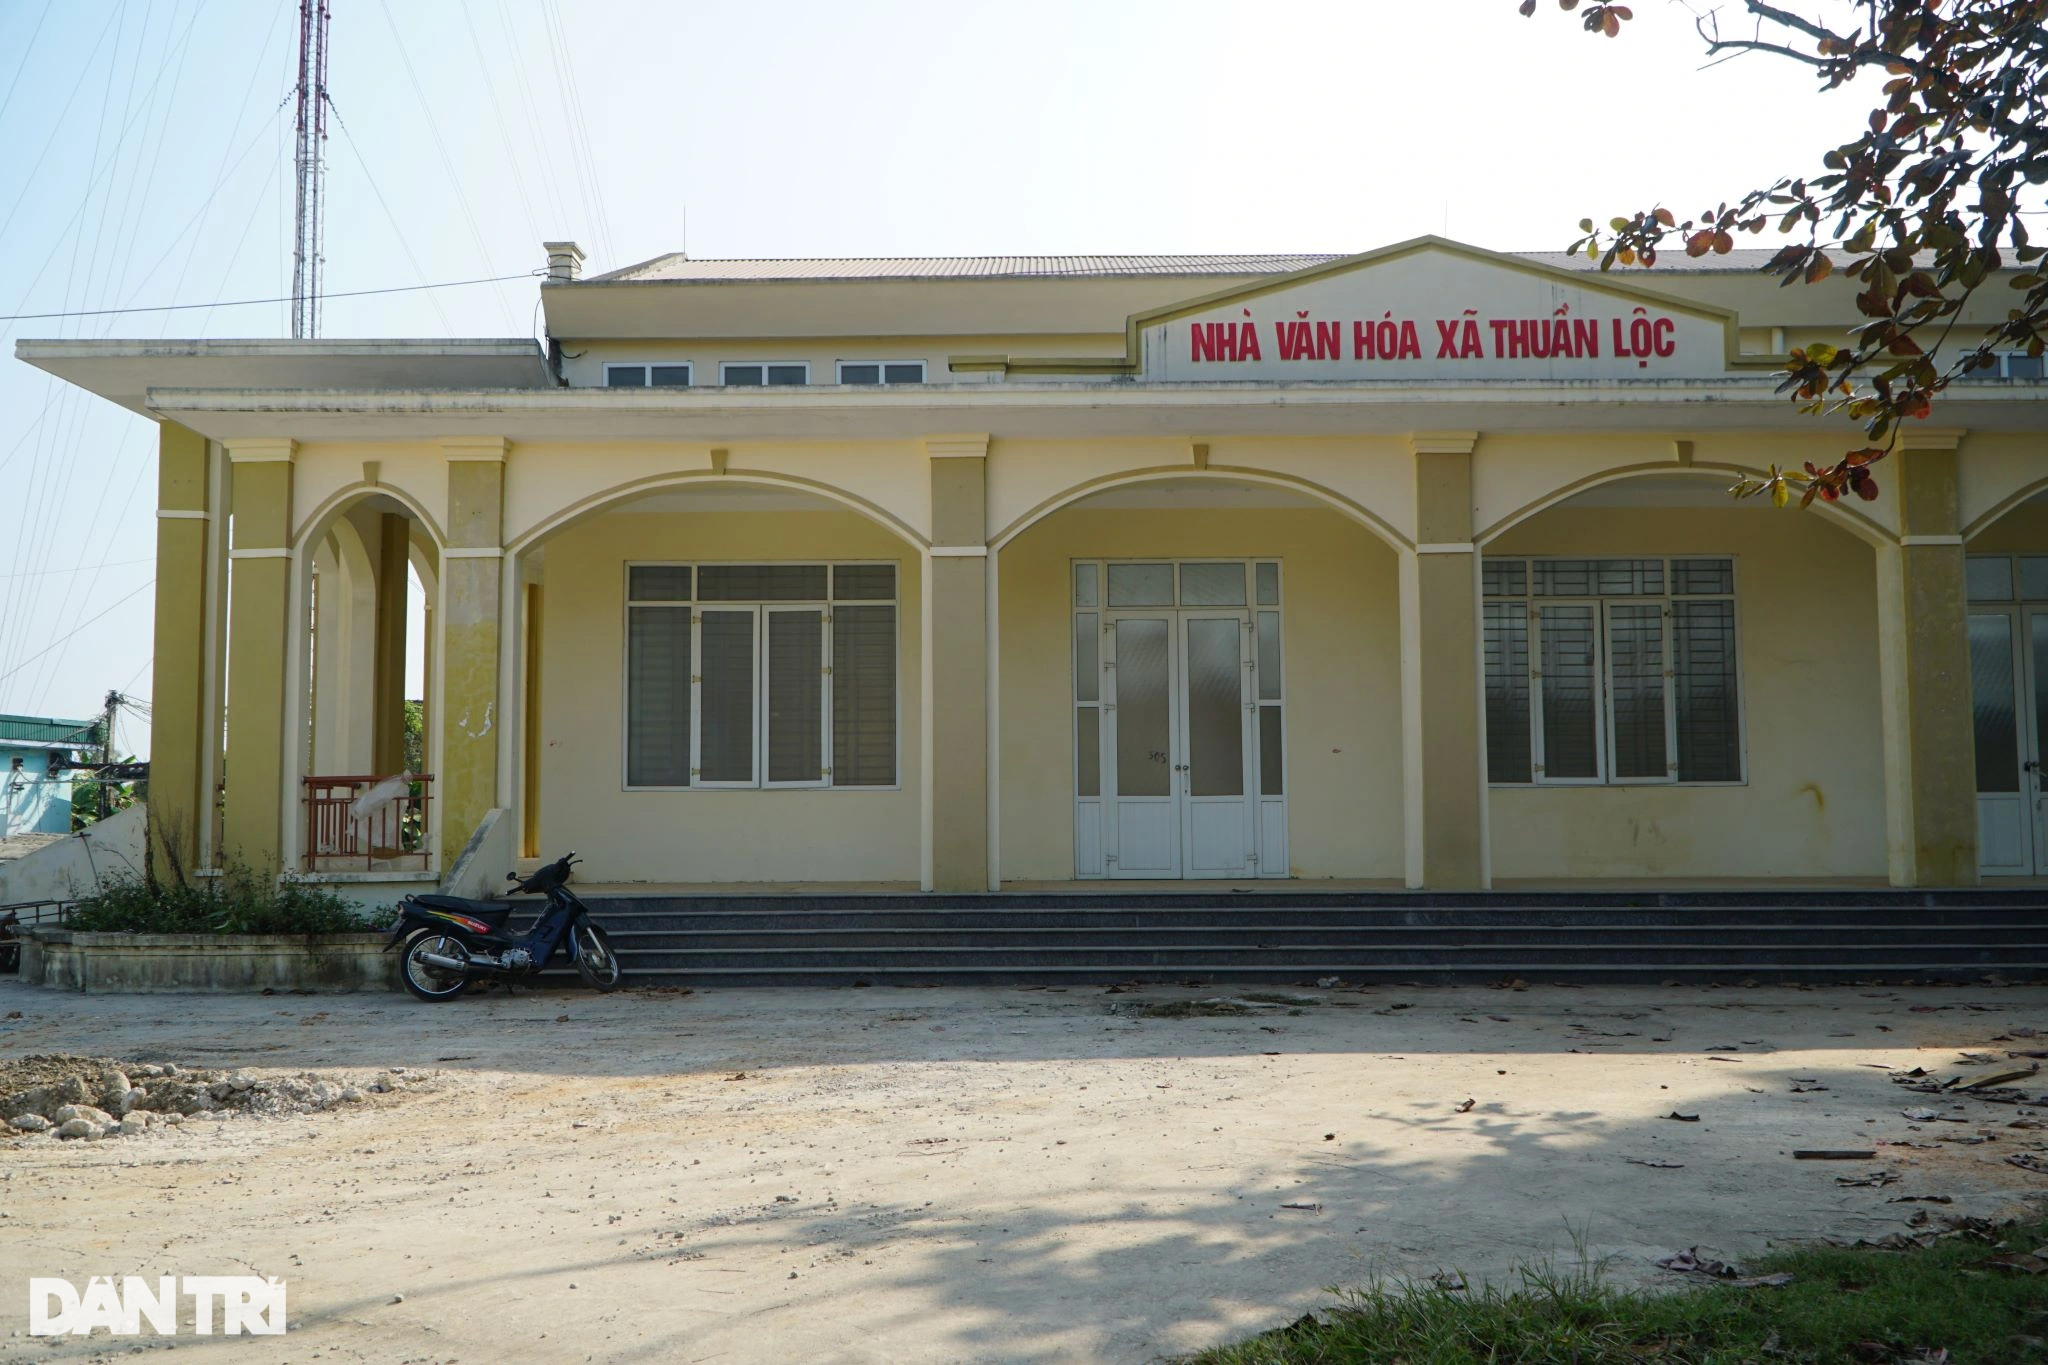 Loạt công sở tiền tỷ ở Thanh Hóa bỏ hoang sau sáp nhập - 4